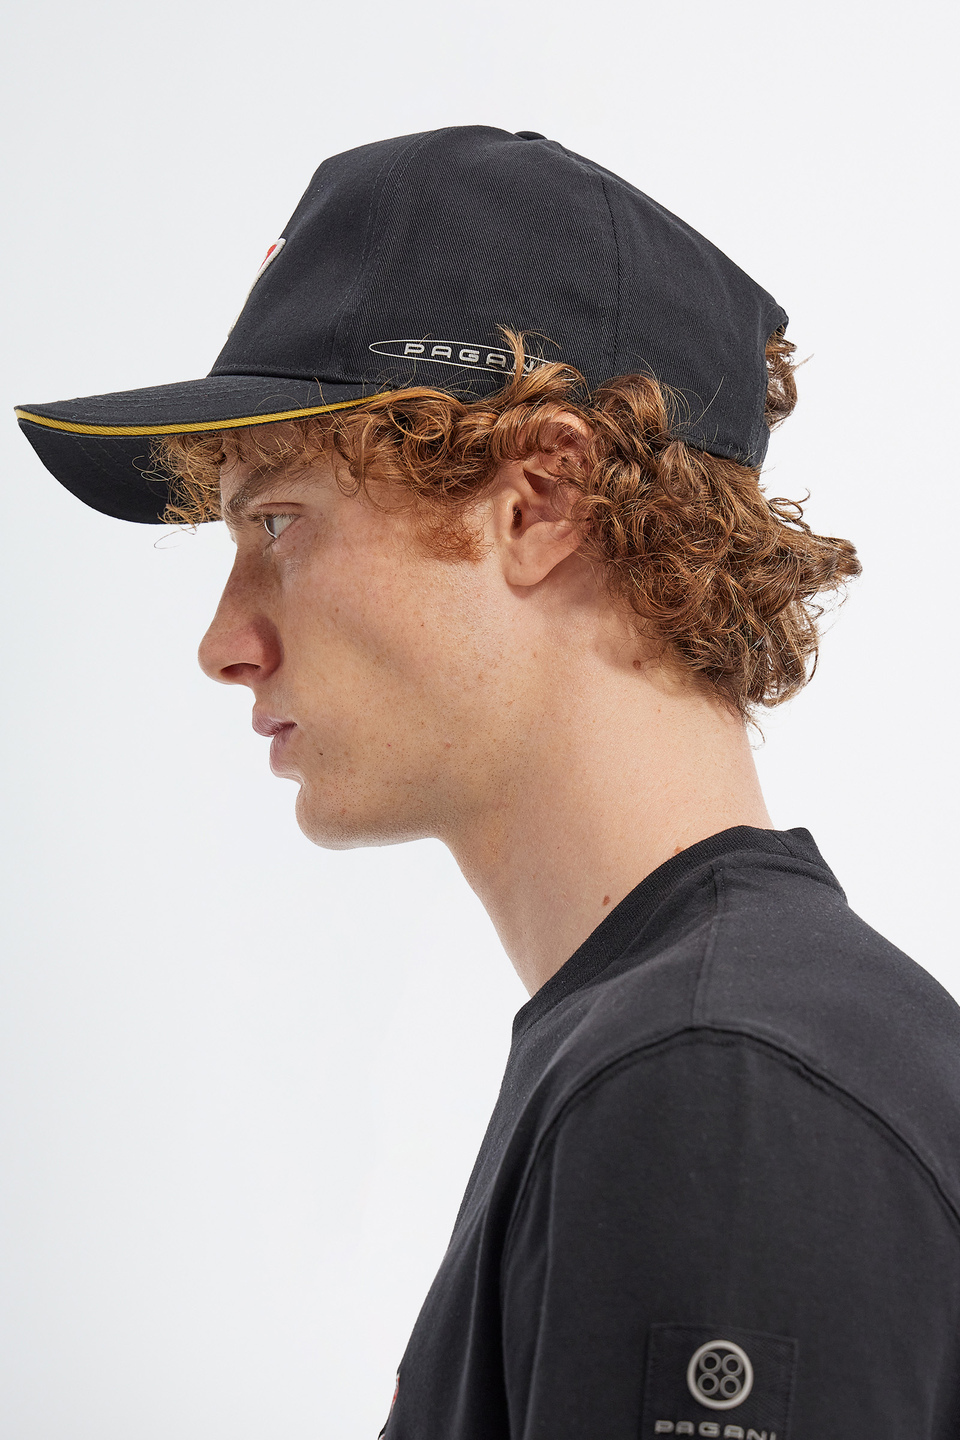 Pagani cap with visor | La Martina - Official Online Shop